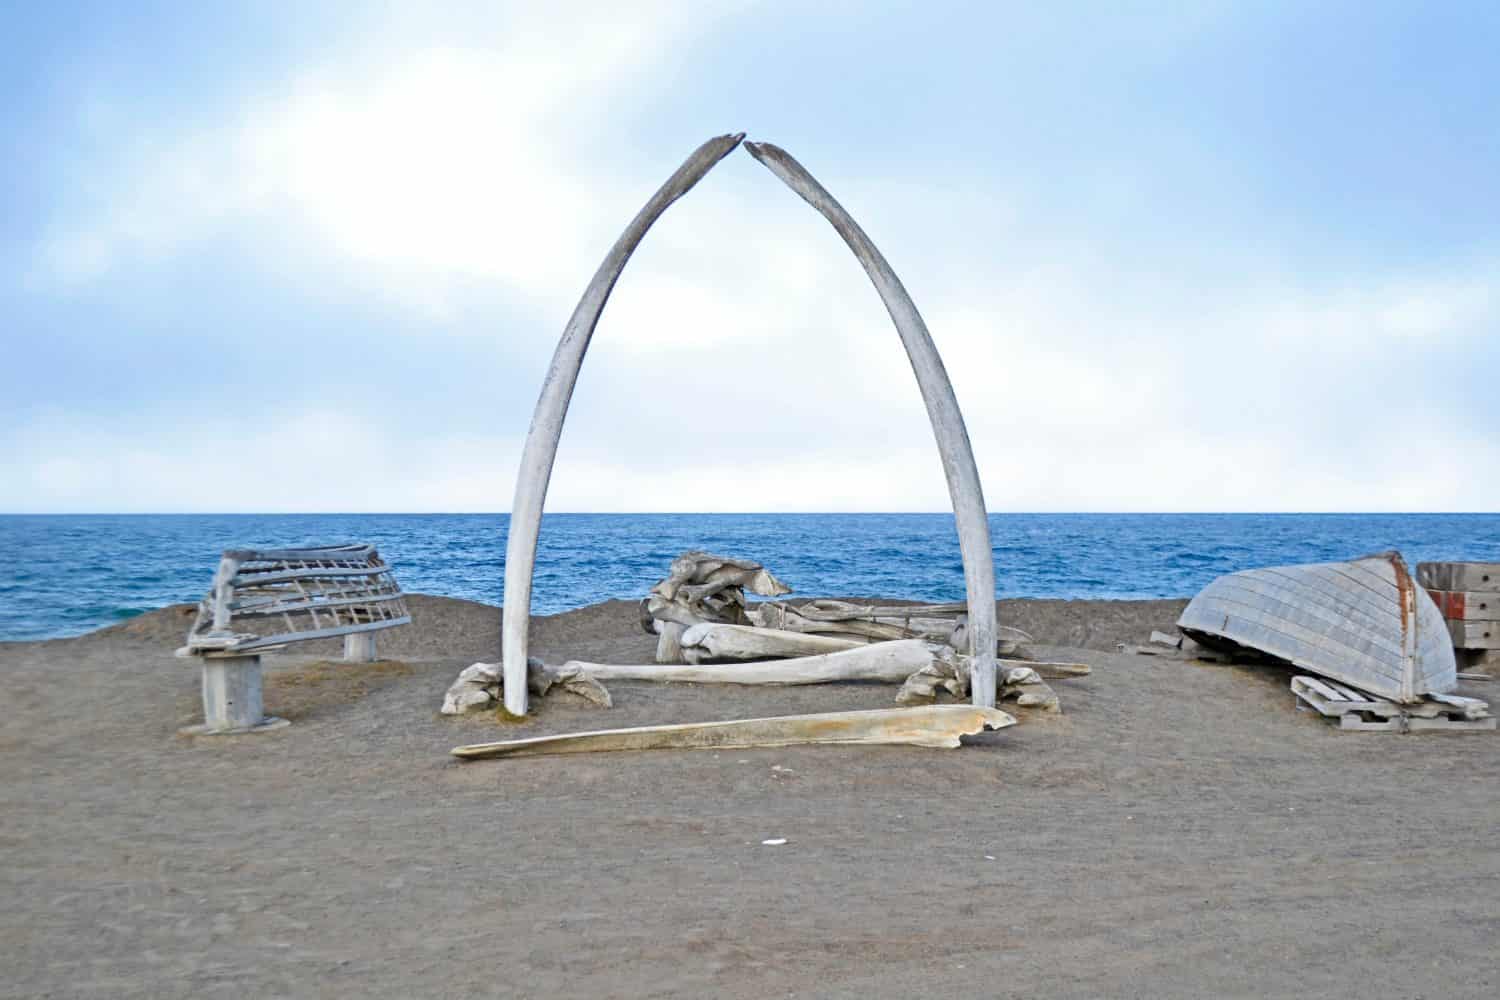 Arco di ossa di balena a Utqiagvik, Alaska, ai margini dell'Oceano Artico.  Denominato il "Porta per l'Artico"simboleggia il rapporto della comunità con il mare e la caccia alle balene.